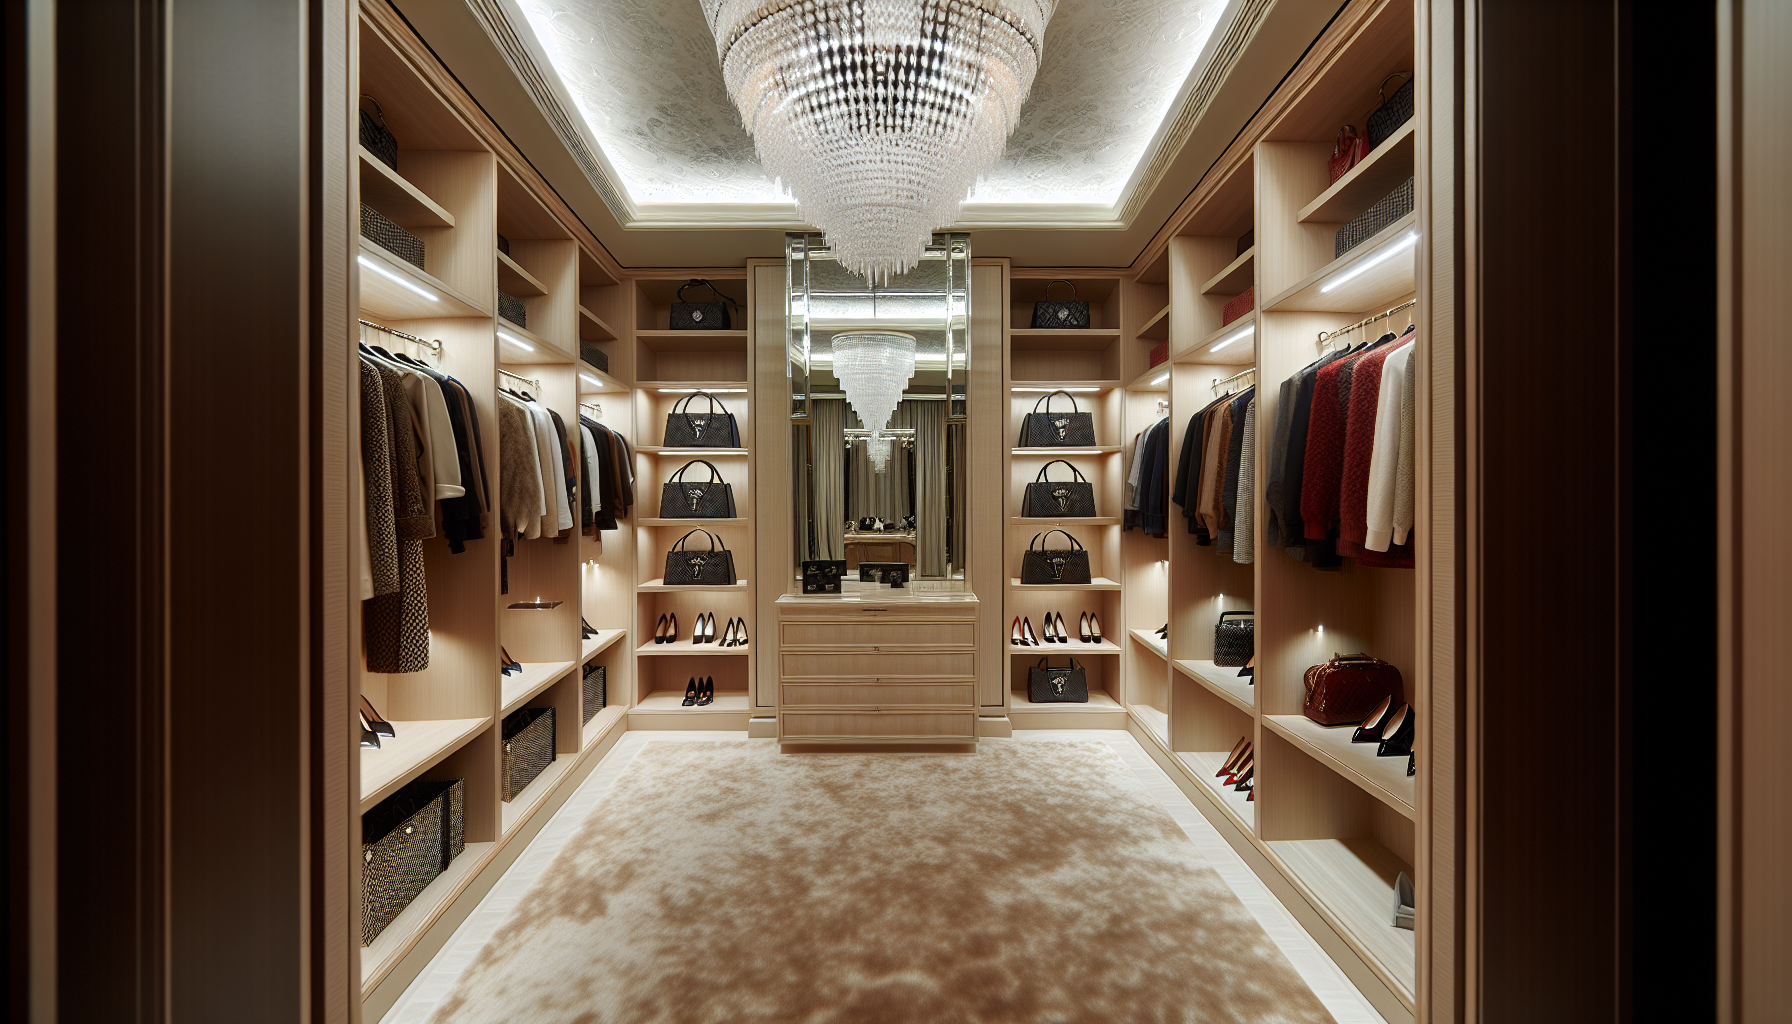 Elegant lighting fixtures in a luxurious walk in closet